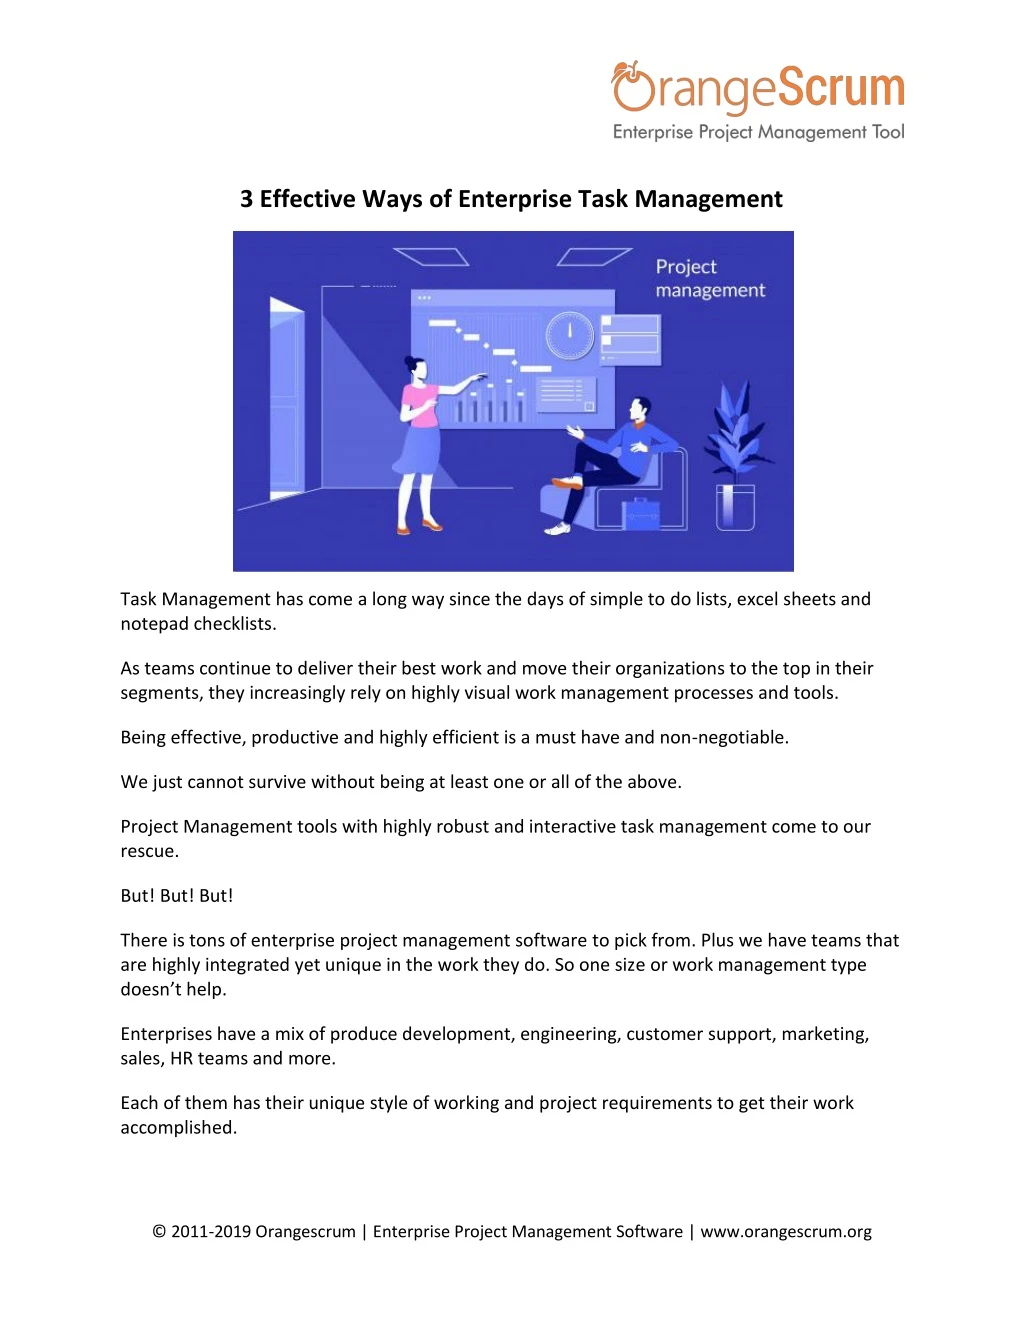 3 effective ways of enterprise task management